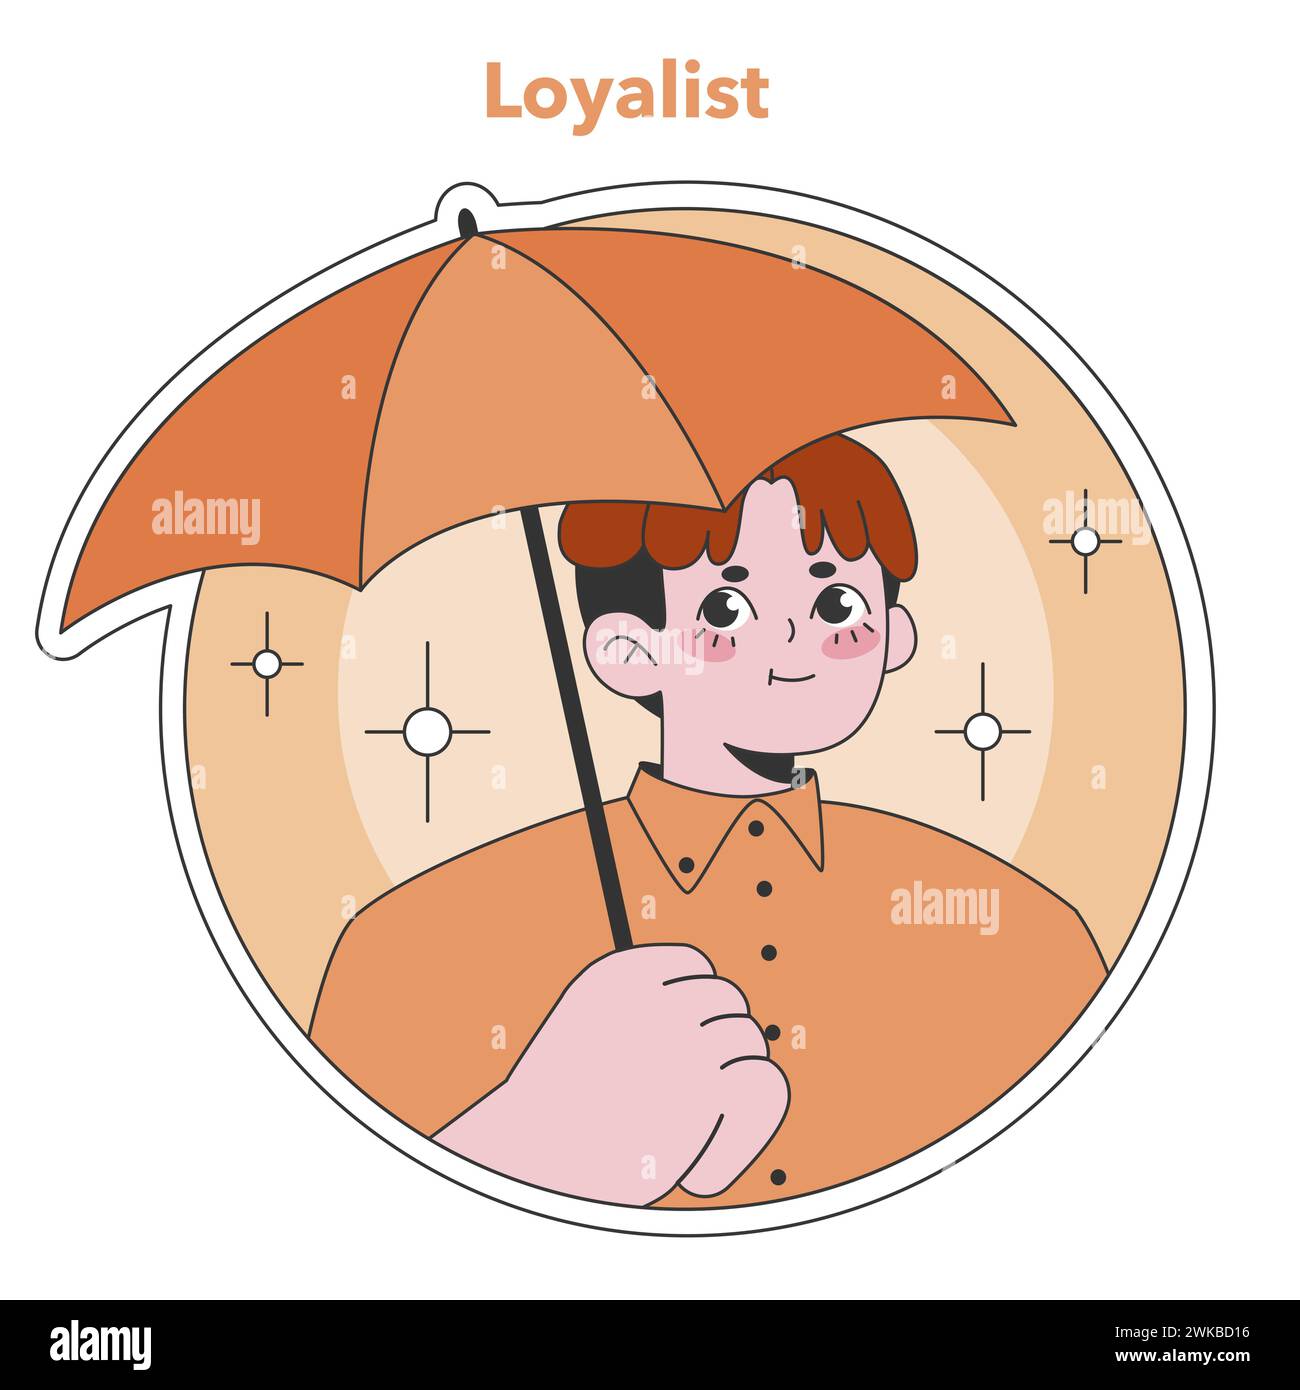 Illustrazione di tipo Enneagram Loyalist. Un personaggio affidabile e impegnato che tiene in mano un ombrello, simboleggiando il supporto e la sicurezza. Ideale per i concetti di creazione di fiducia. Illustrazione vettoriale piatta Illustrazione Vettoriale